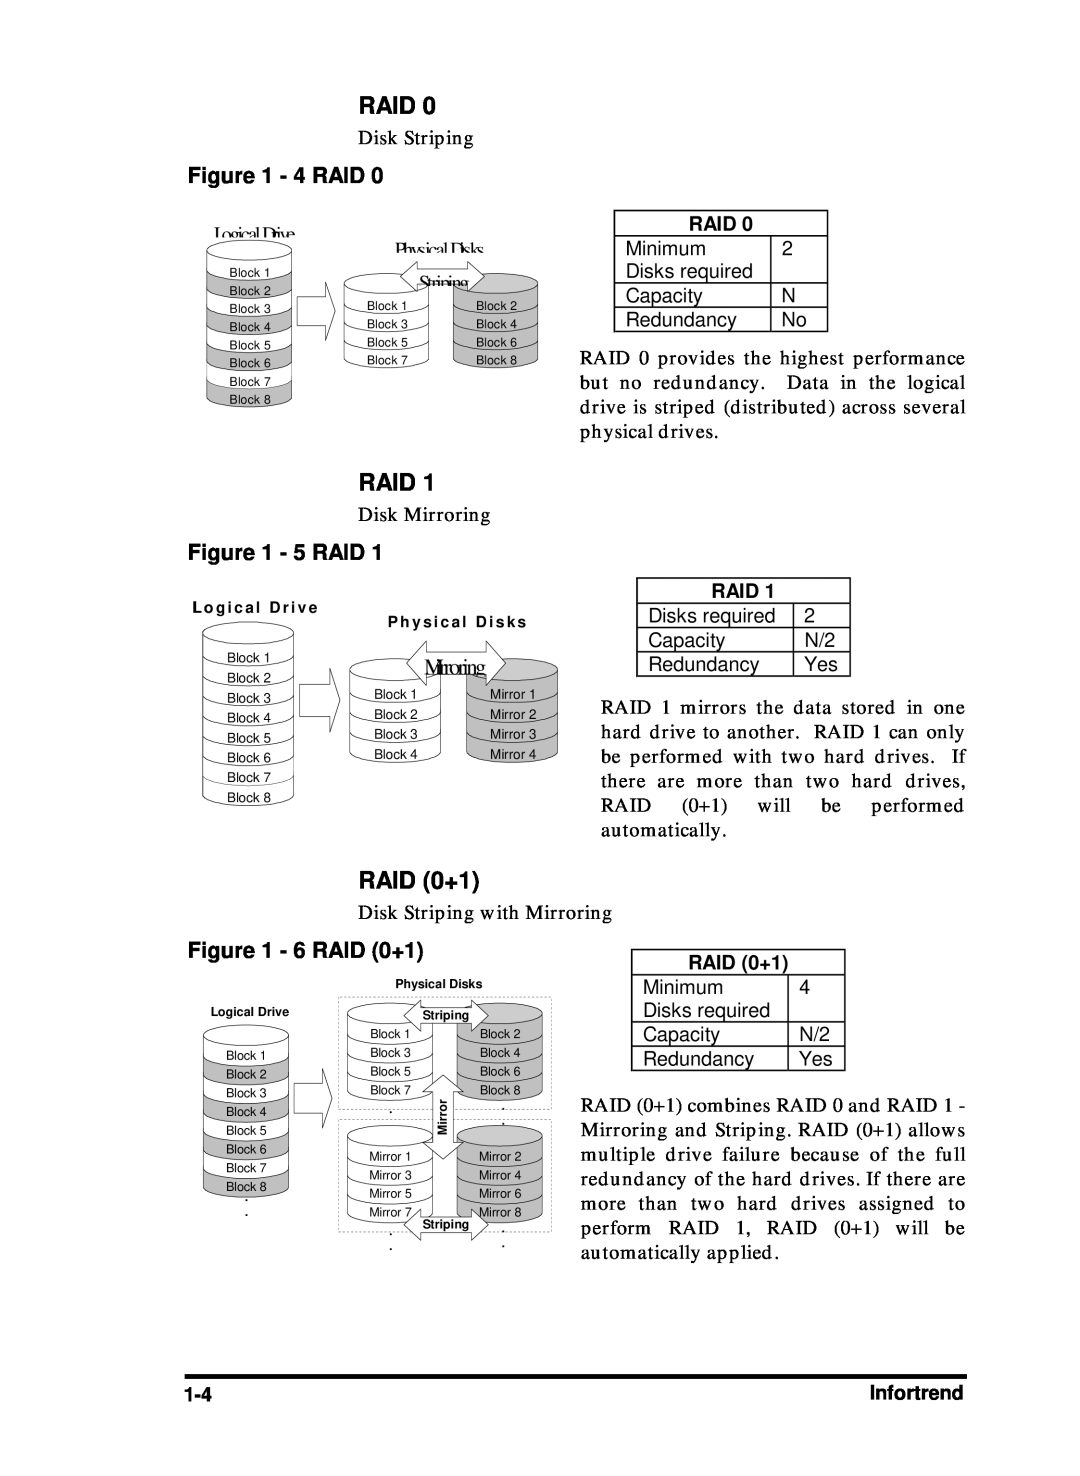 Compaq Infortrend manual Raid, 4 RAID, 5 RAID, Mirroring, 6 RAID 0+1, LogicalDrive, PhysicalDisks 